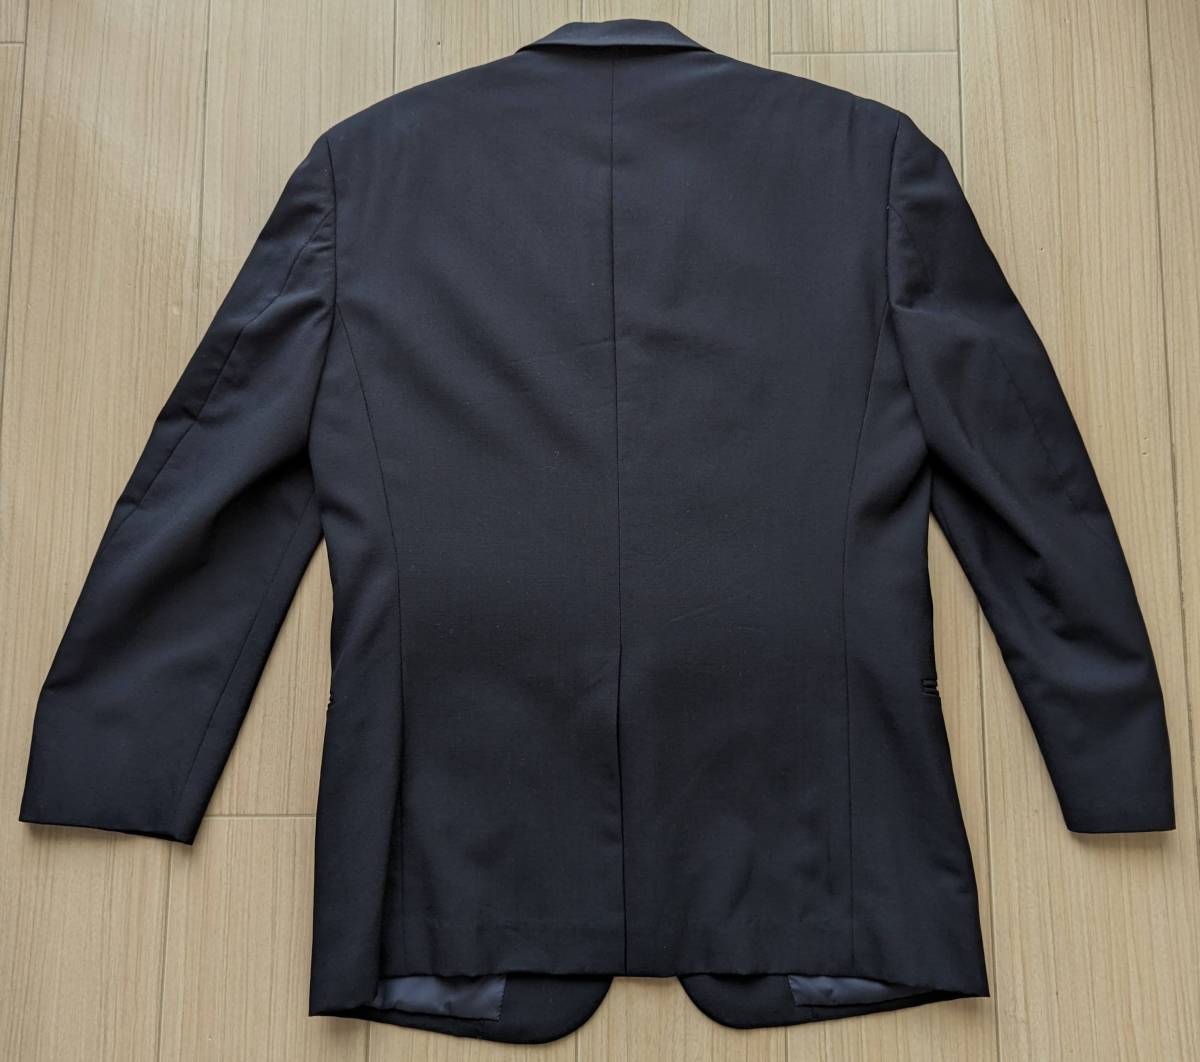 メンズ スーツ 上下セット ジャケット パンツ 大丸松坂屋 百貨店 購入品の画像2